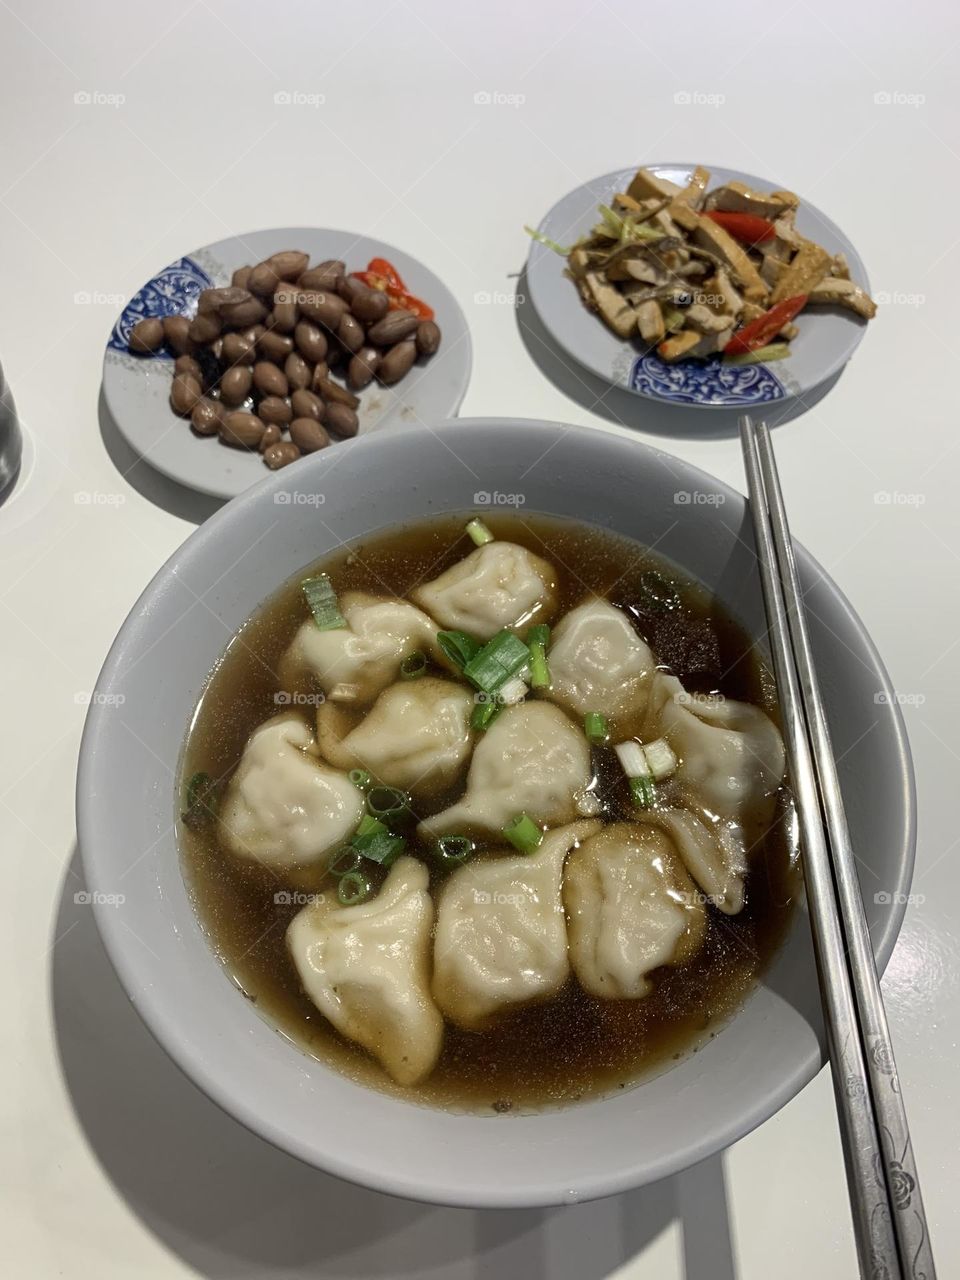 Dumplings soup and sides